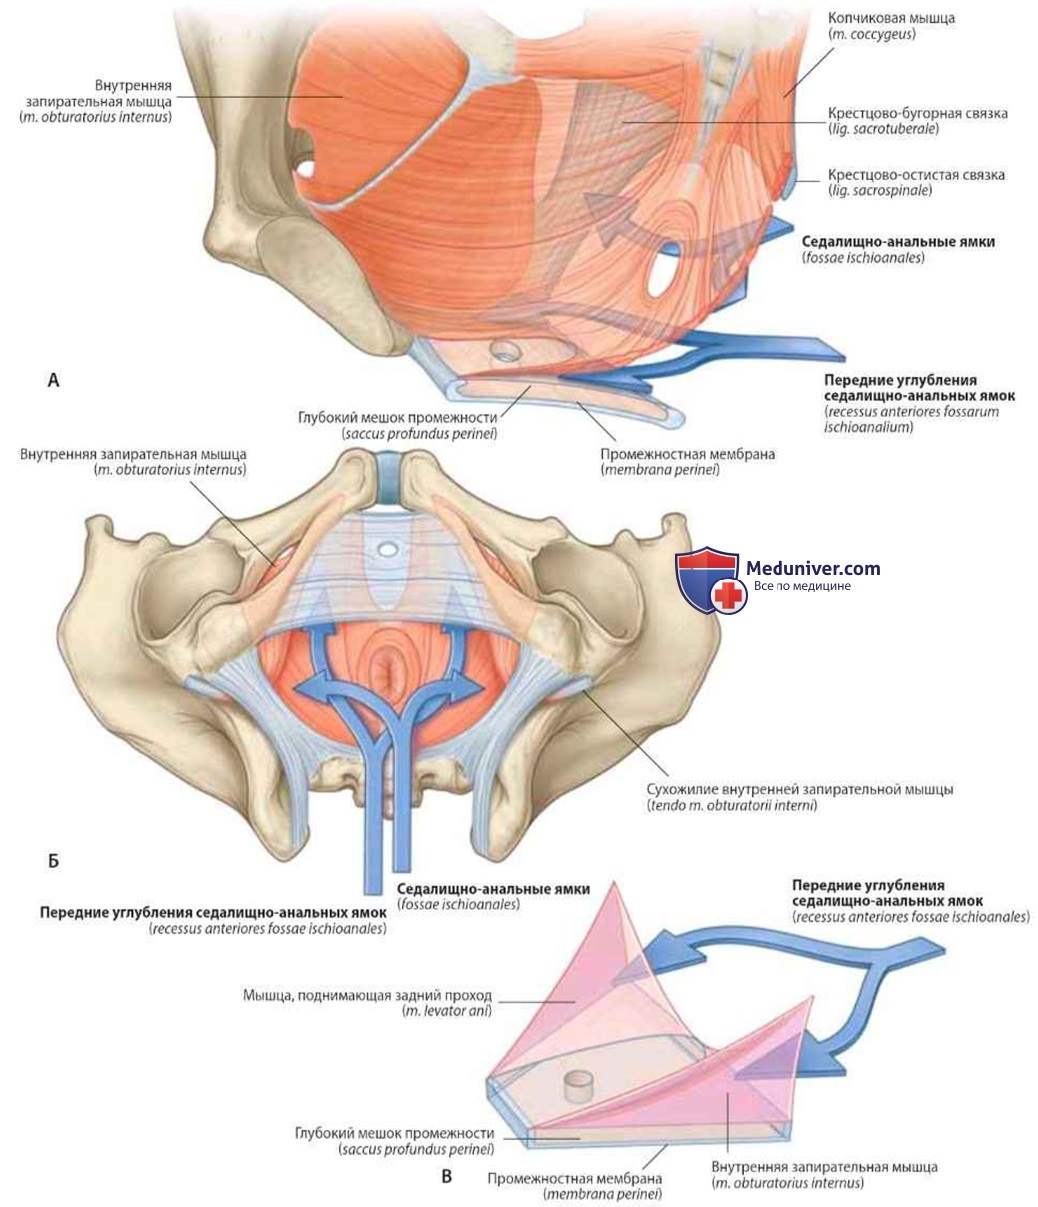 Седалищно-анальные ямки и их передние углубления: анатомия, топография